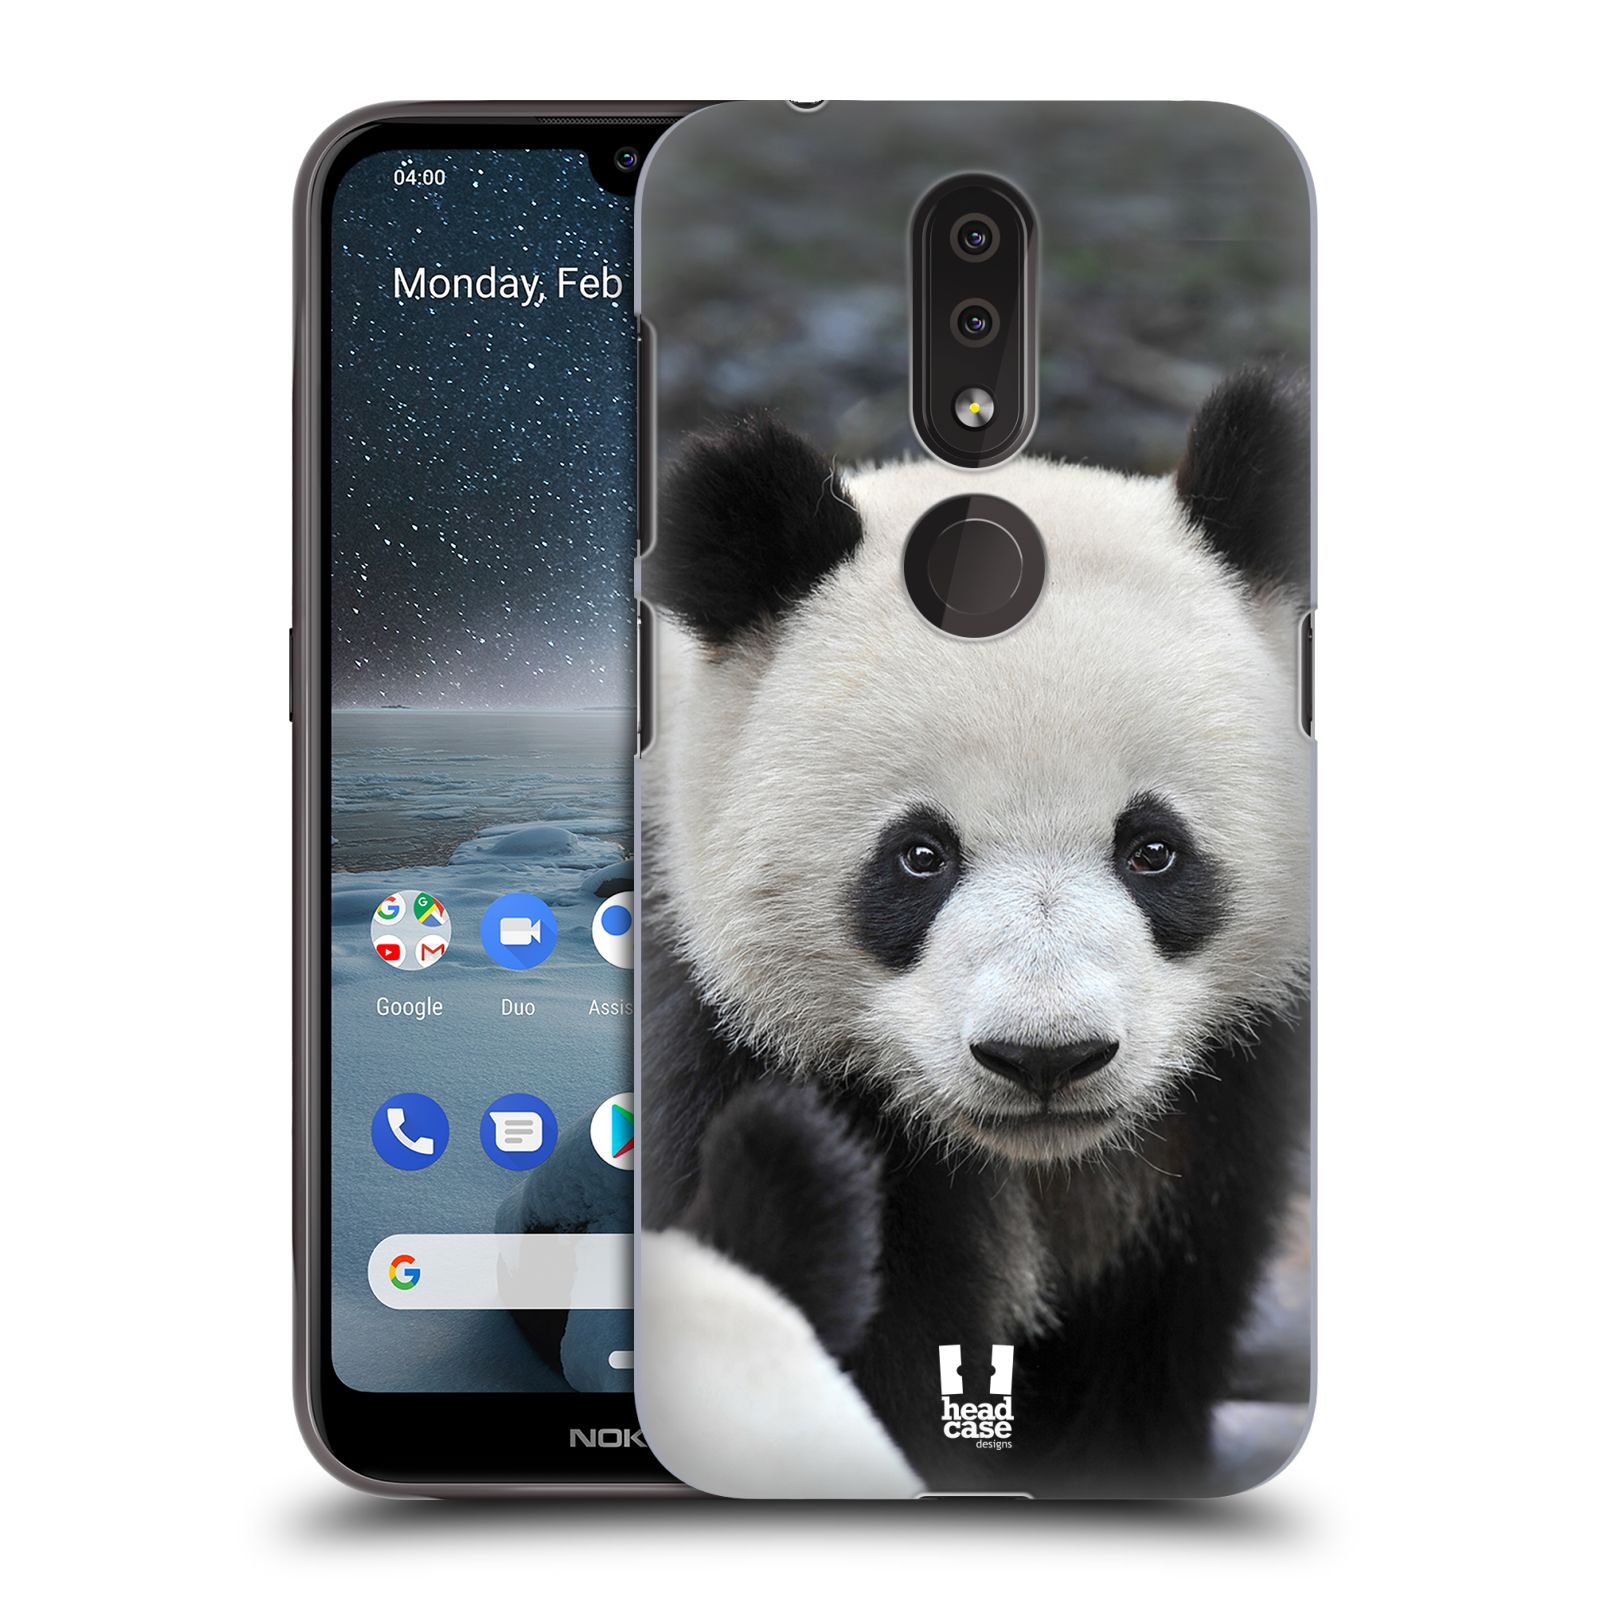 Pouzdro na mobil Nokia 4.2 - HEAD CASE - vzor Divočina, Divoký život a zvířata foto MEDVĚD PANDA